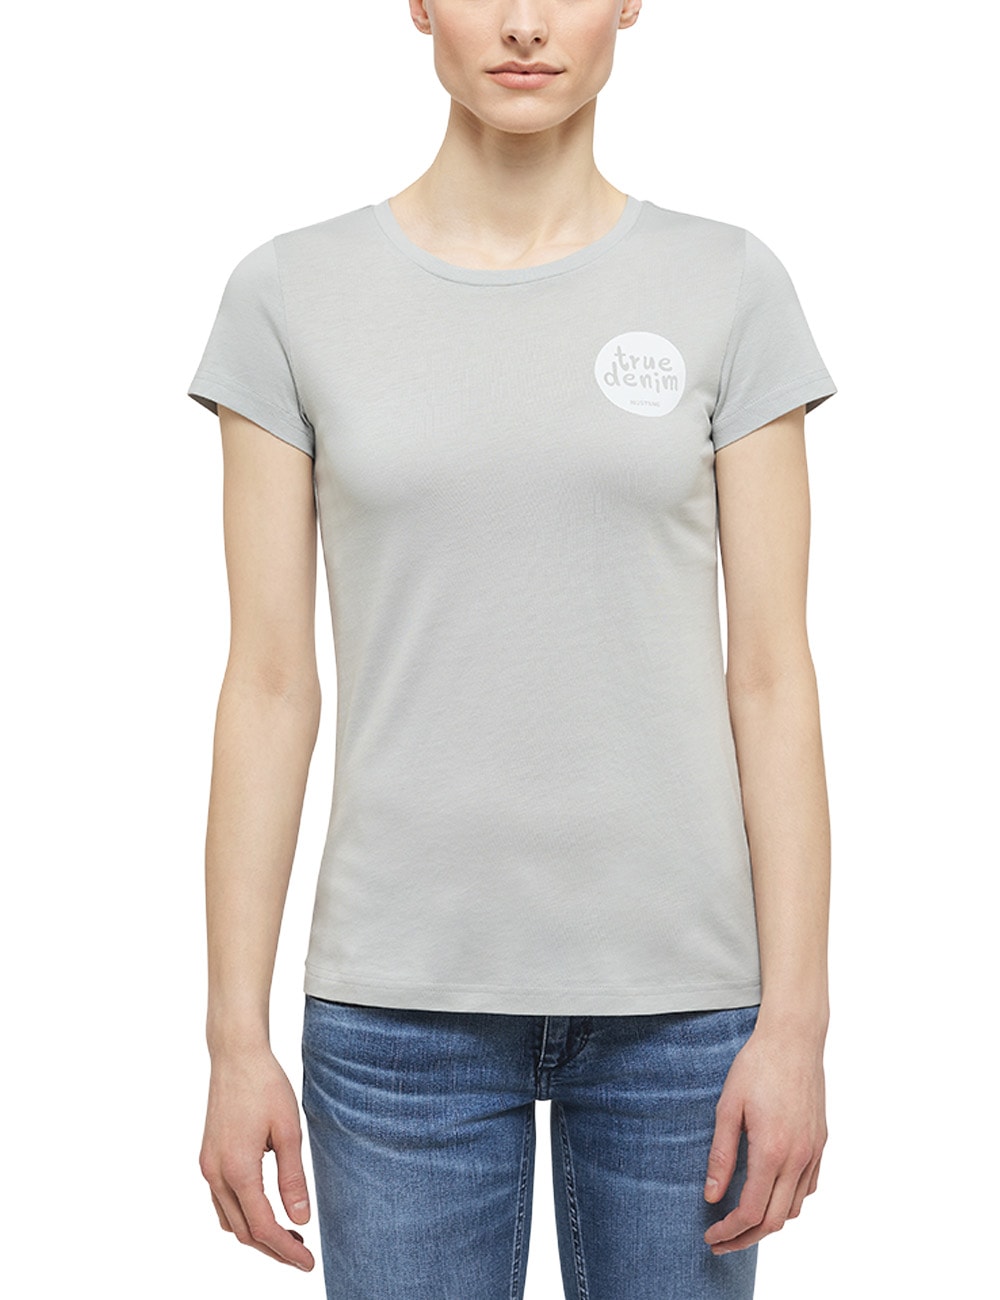 »Alexia T-Shirt MUSTANG Print« bestellen bei C OTTO